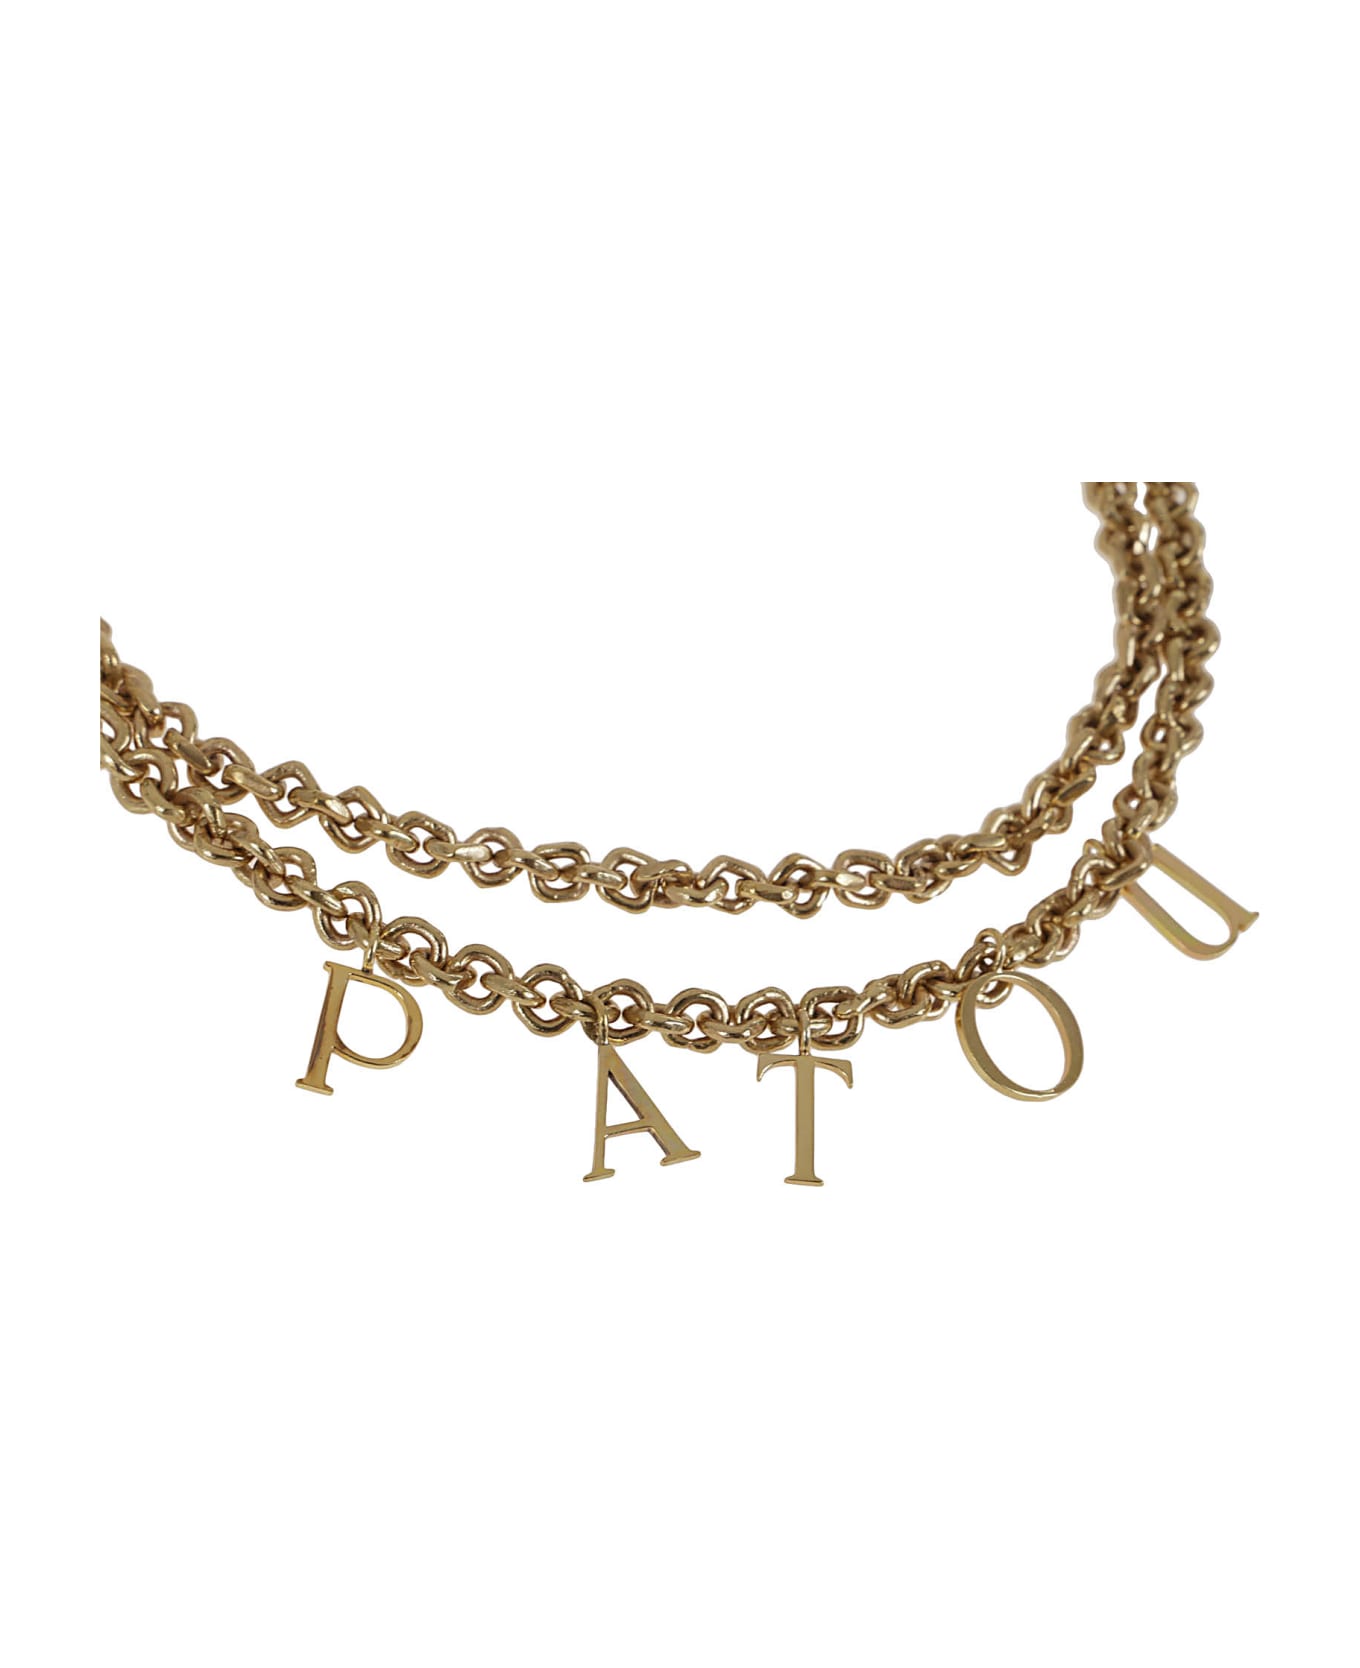 Patou Letters Double Necklace - G Gold